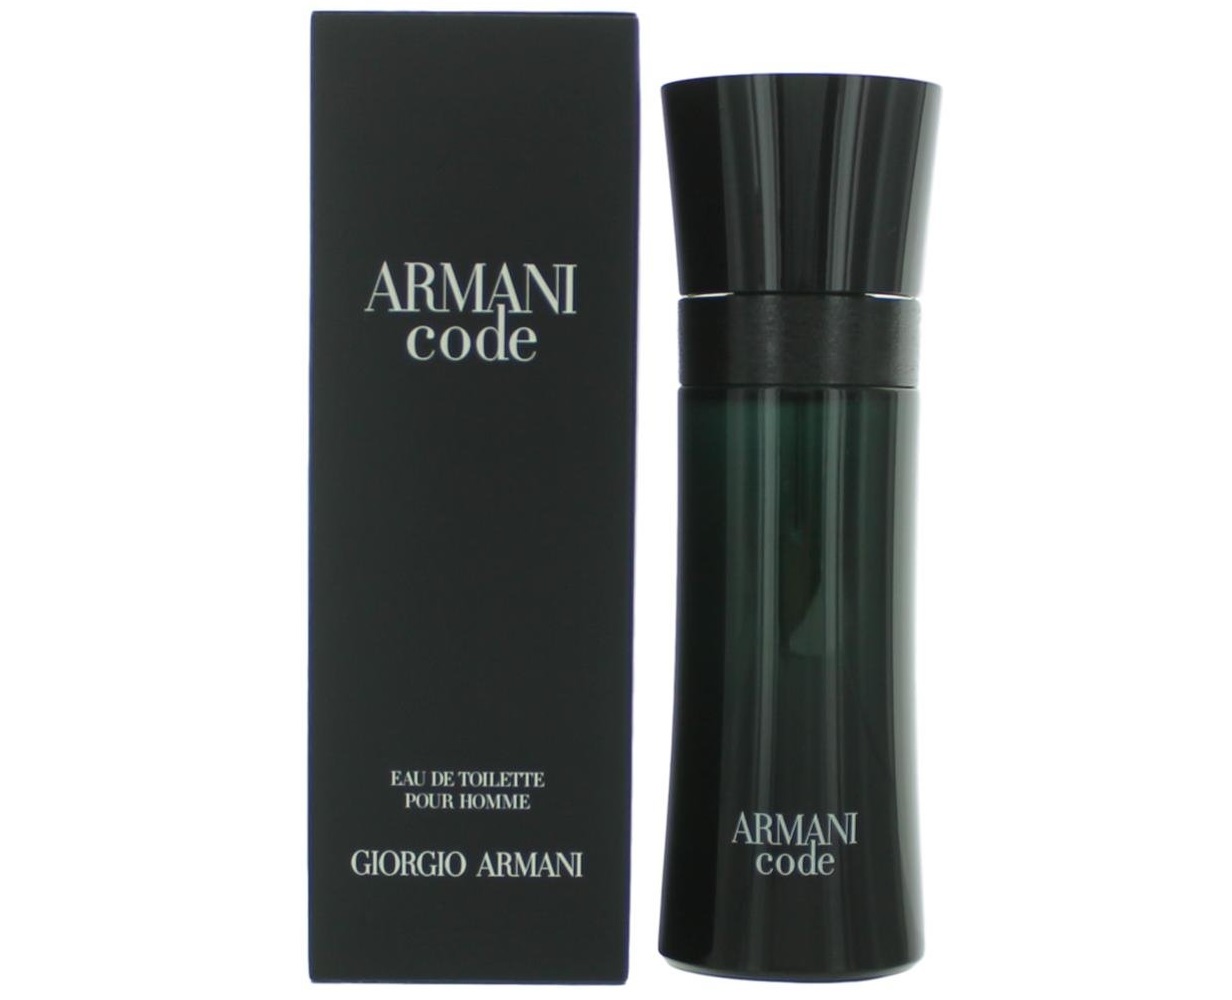 armani code cost